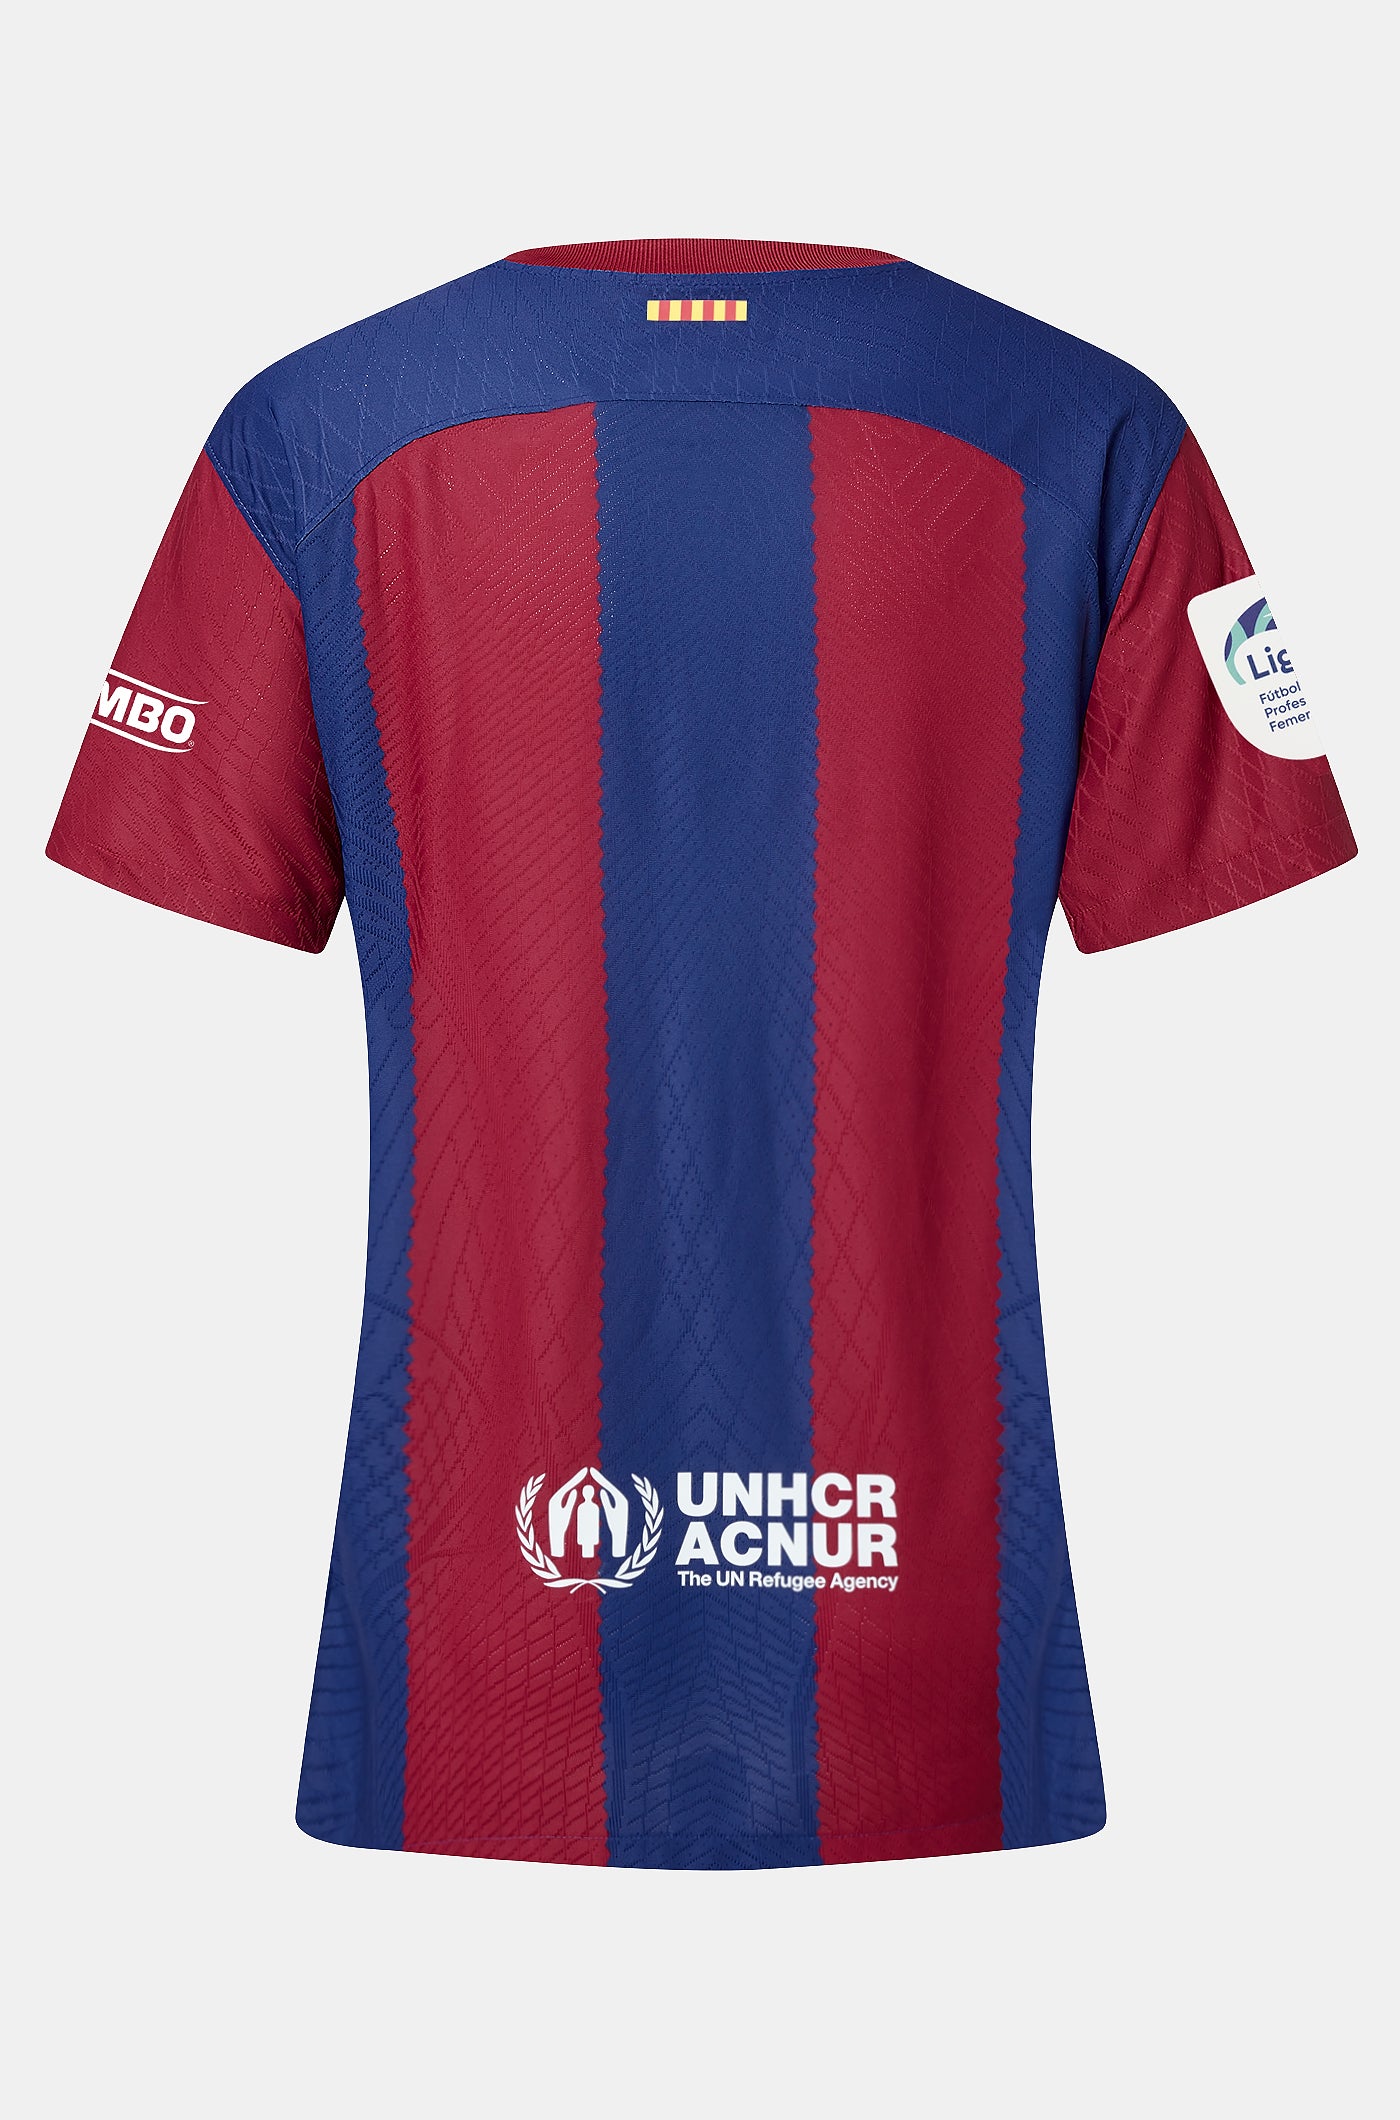 FIRMADA | Camiseta femenina Edición Limitada FC BARCELONA X KAROL G firmada por el equipo titular que disputó el Clásico y el equipo femenino titular del FC Barcelona – Villarreal